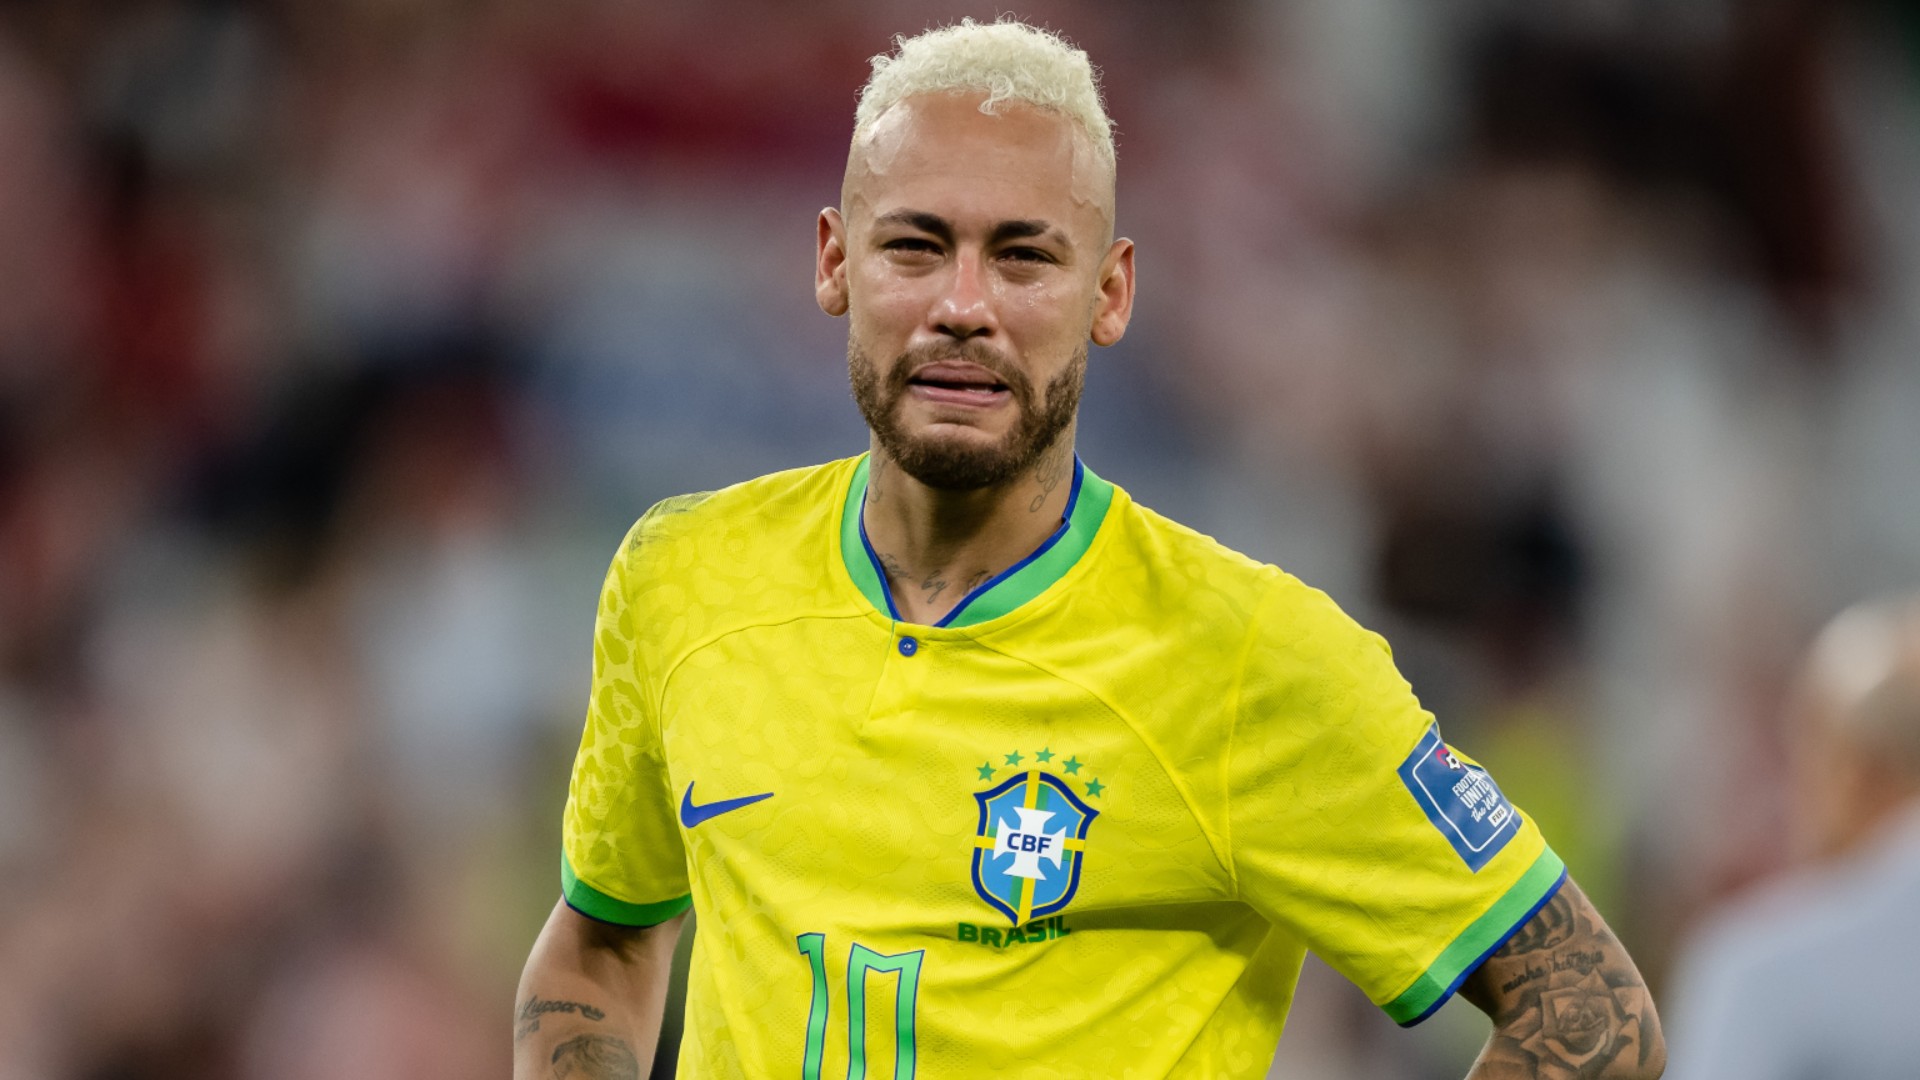 Heartbreak for Brazil as Croatia win on penalties to reach World Cup  semifinal